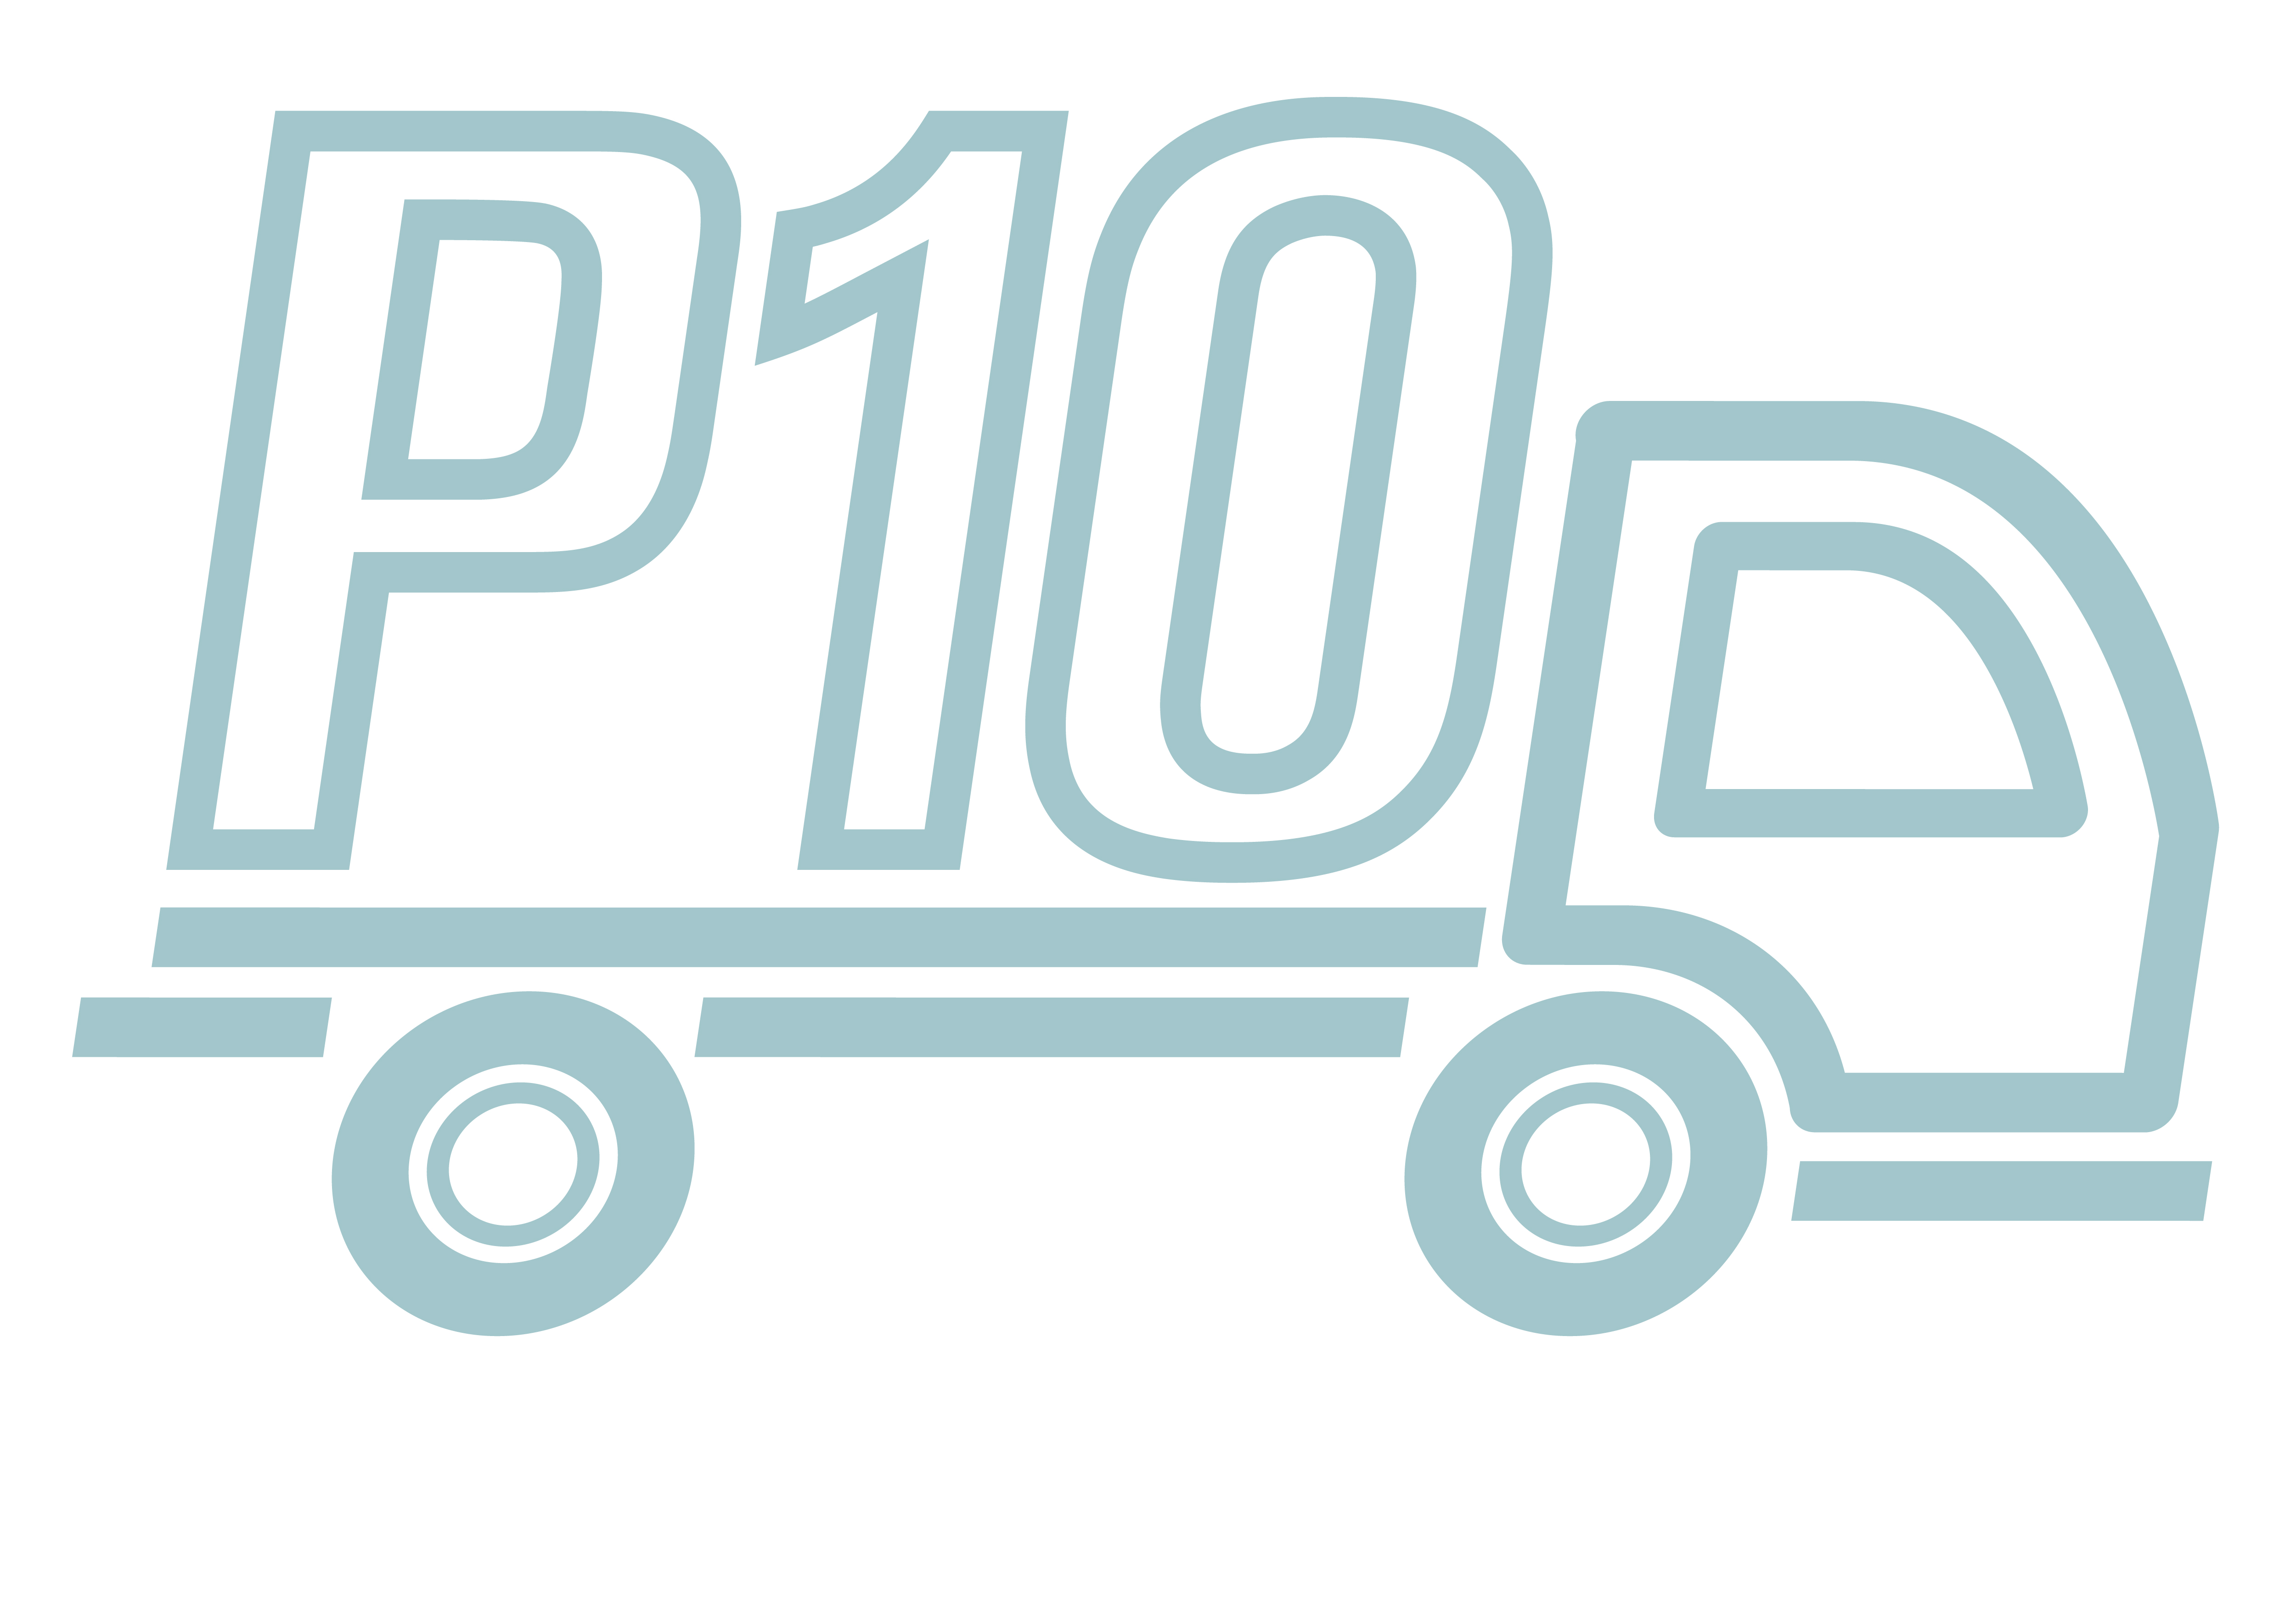 P10 - Tampa Logo